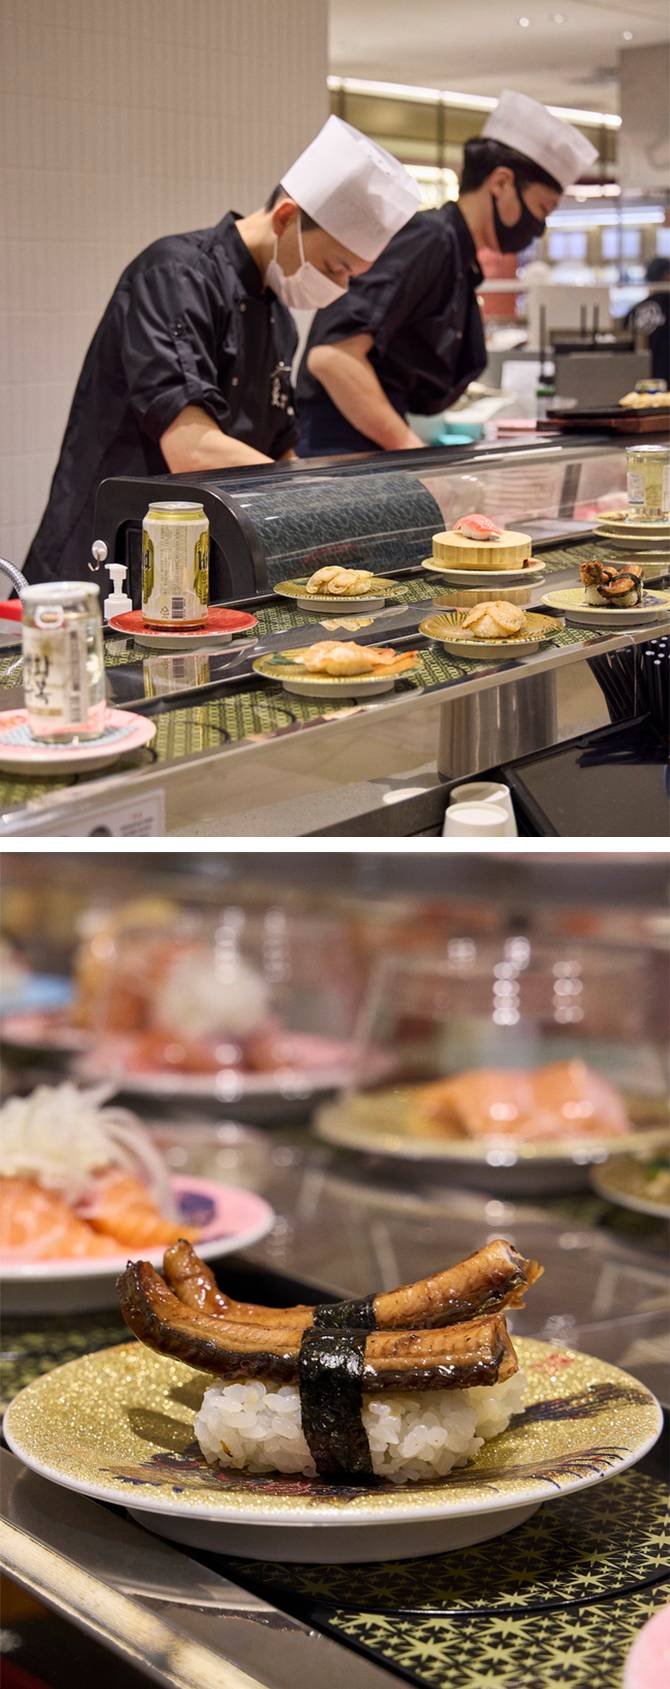 스타 셰프와 유명 초밥집이 협업한 새로운 콘셉트의 초밥 맛집. 
&lt;수요미식회&gt; 맛집이자 혼자서도 초밥을 편하게 먹을 수 있는 회전초밥집으로 알려진 '스시마이우'와 신동민 셰프가 협업한 오마카세 초밥 전문점이에요.